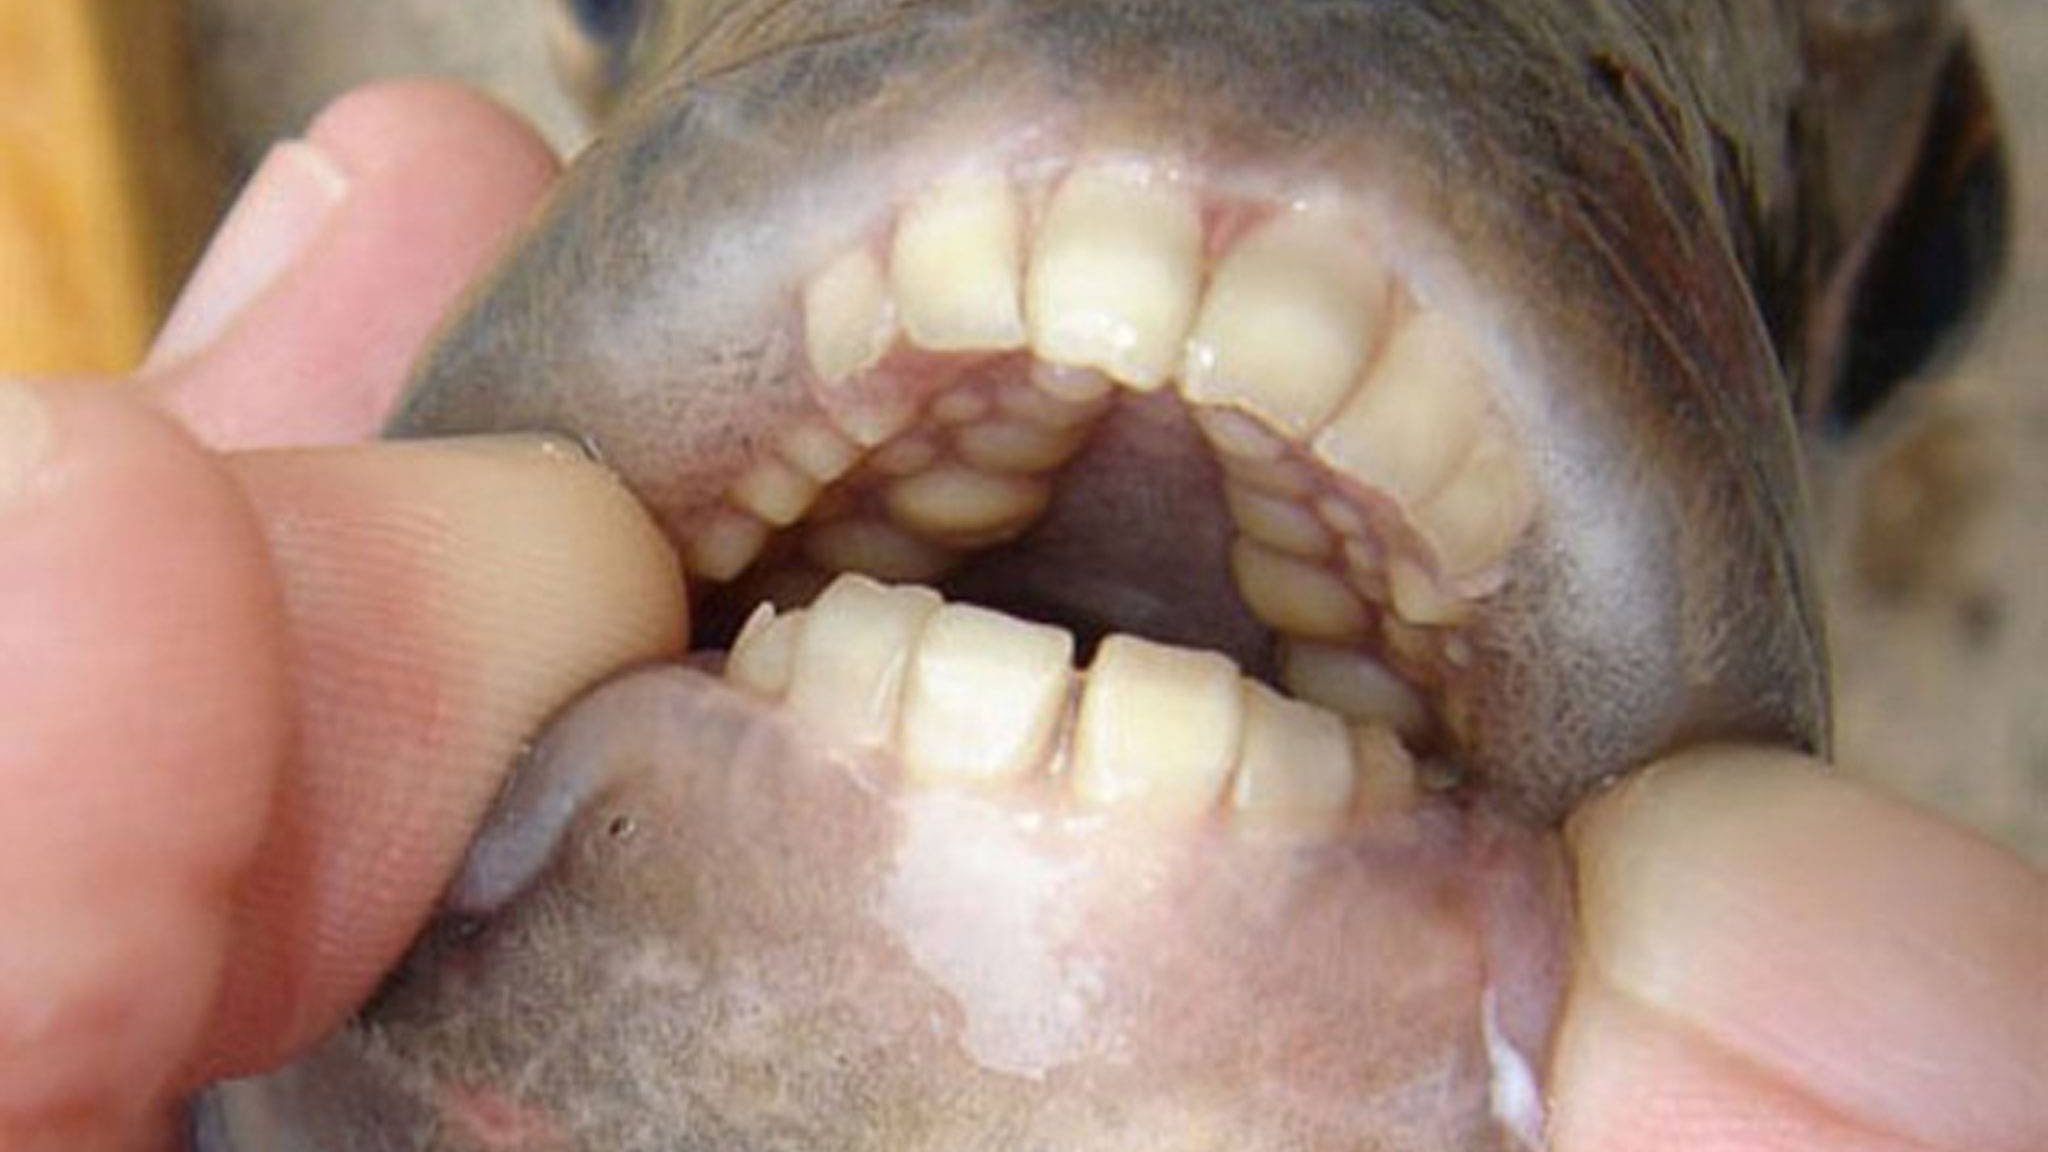 The Southern Sheepshead Fish Has Disturbingly Human Looking Teeth